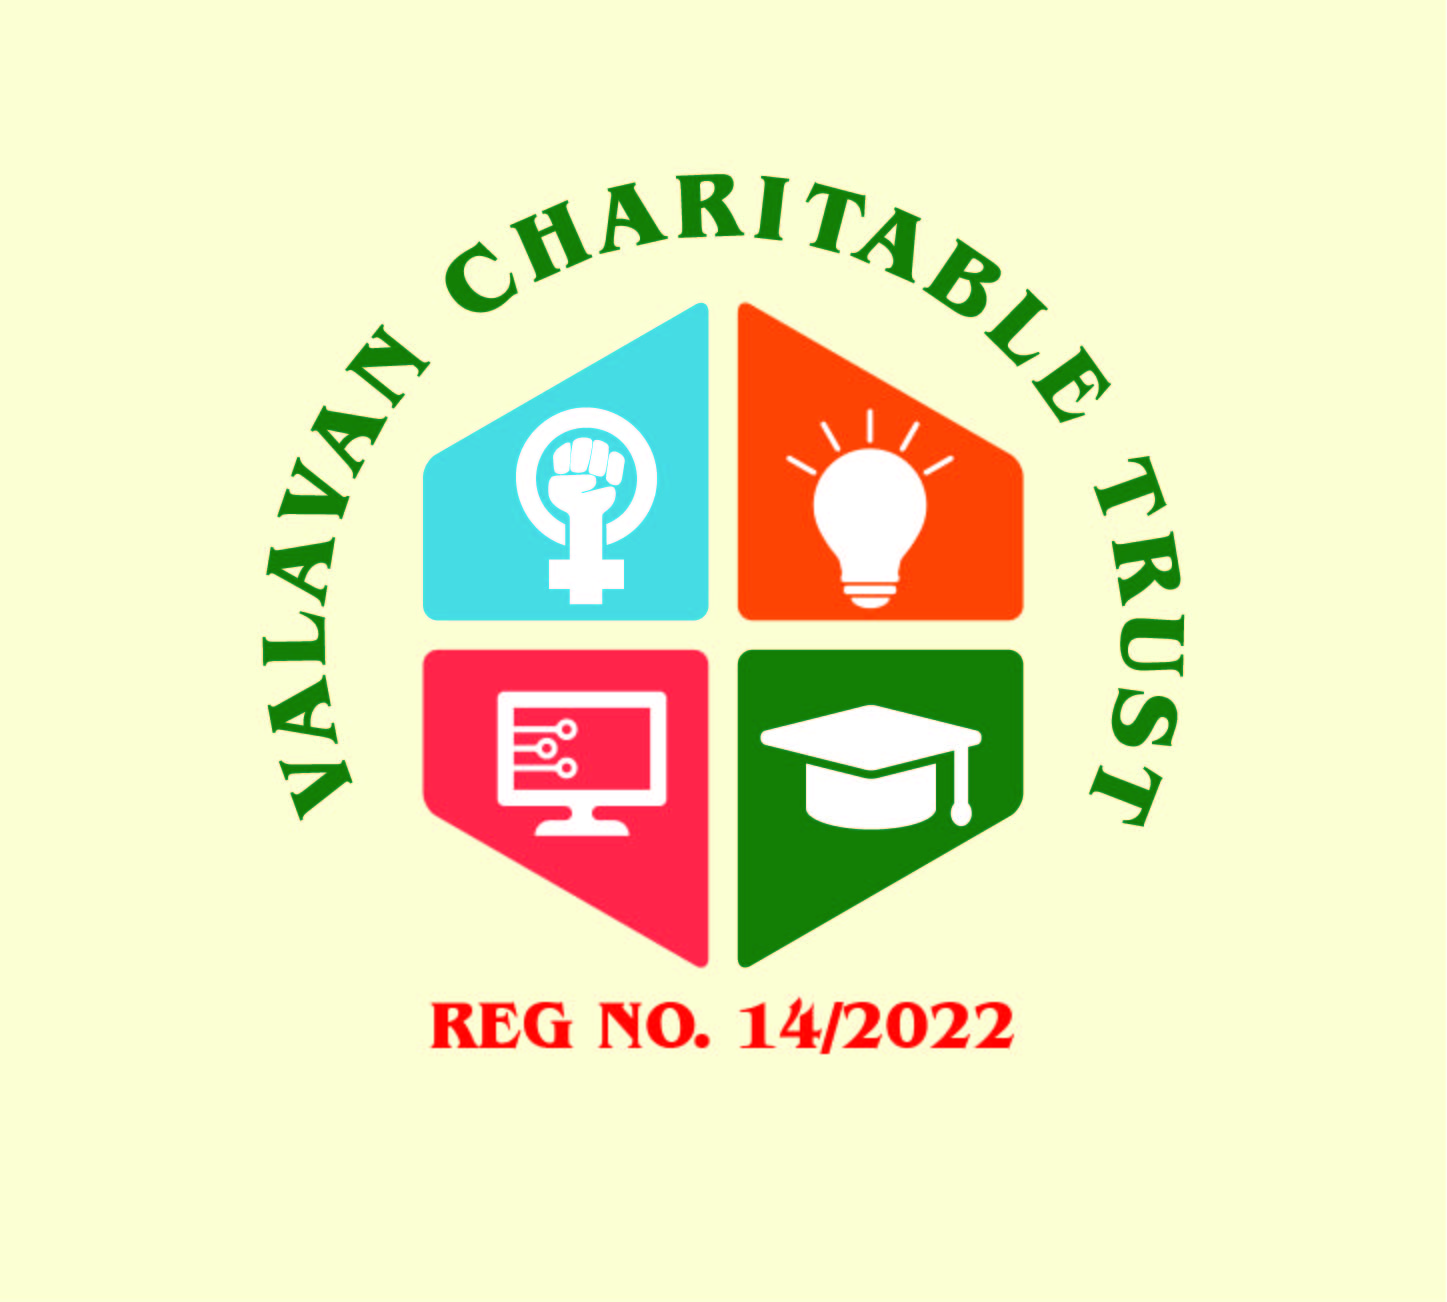 Best Vrudhashram in gujarat - A J Charitable Trust Vrudhashram-